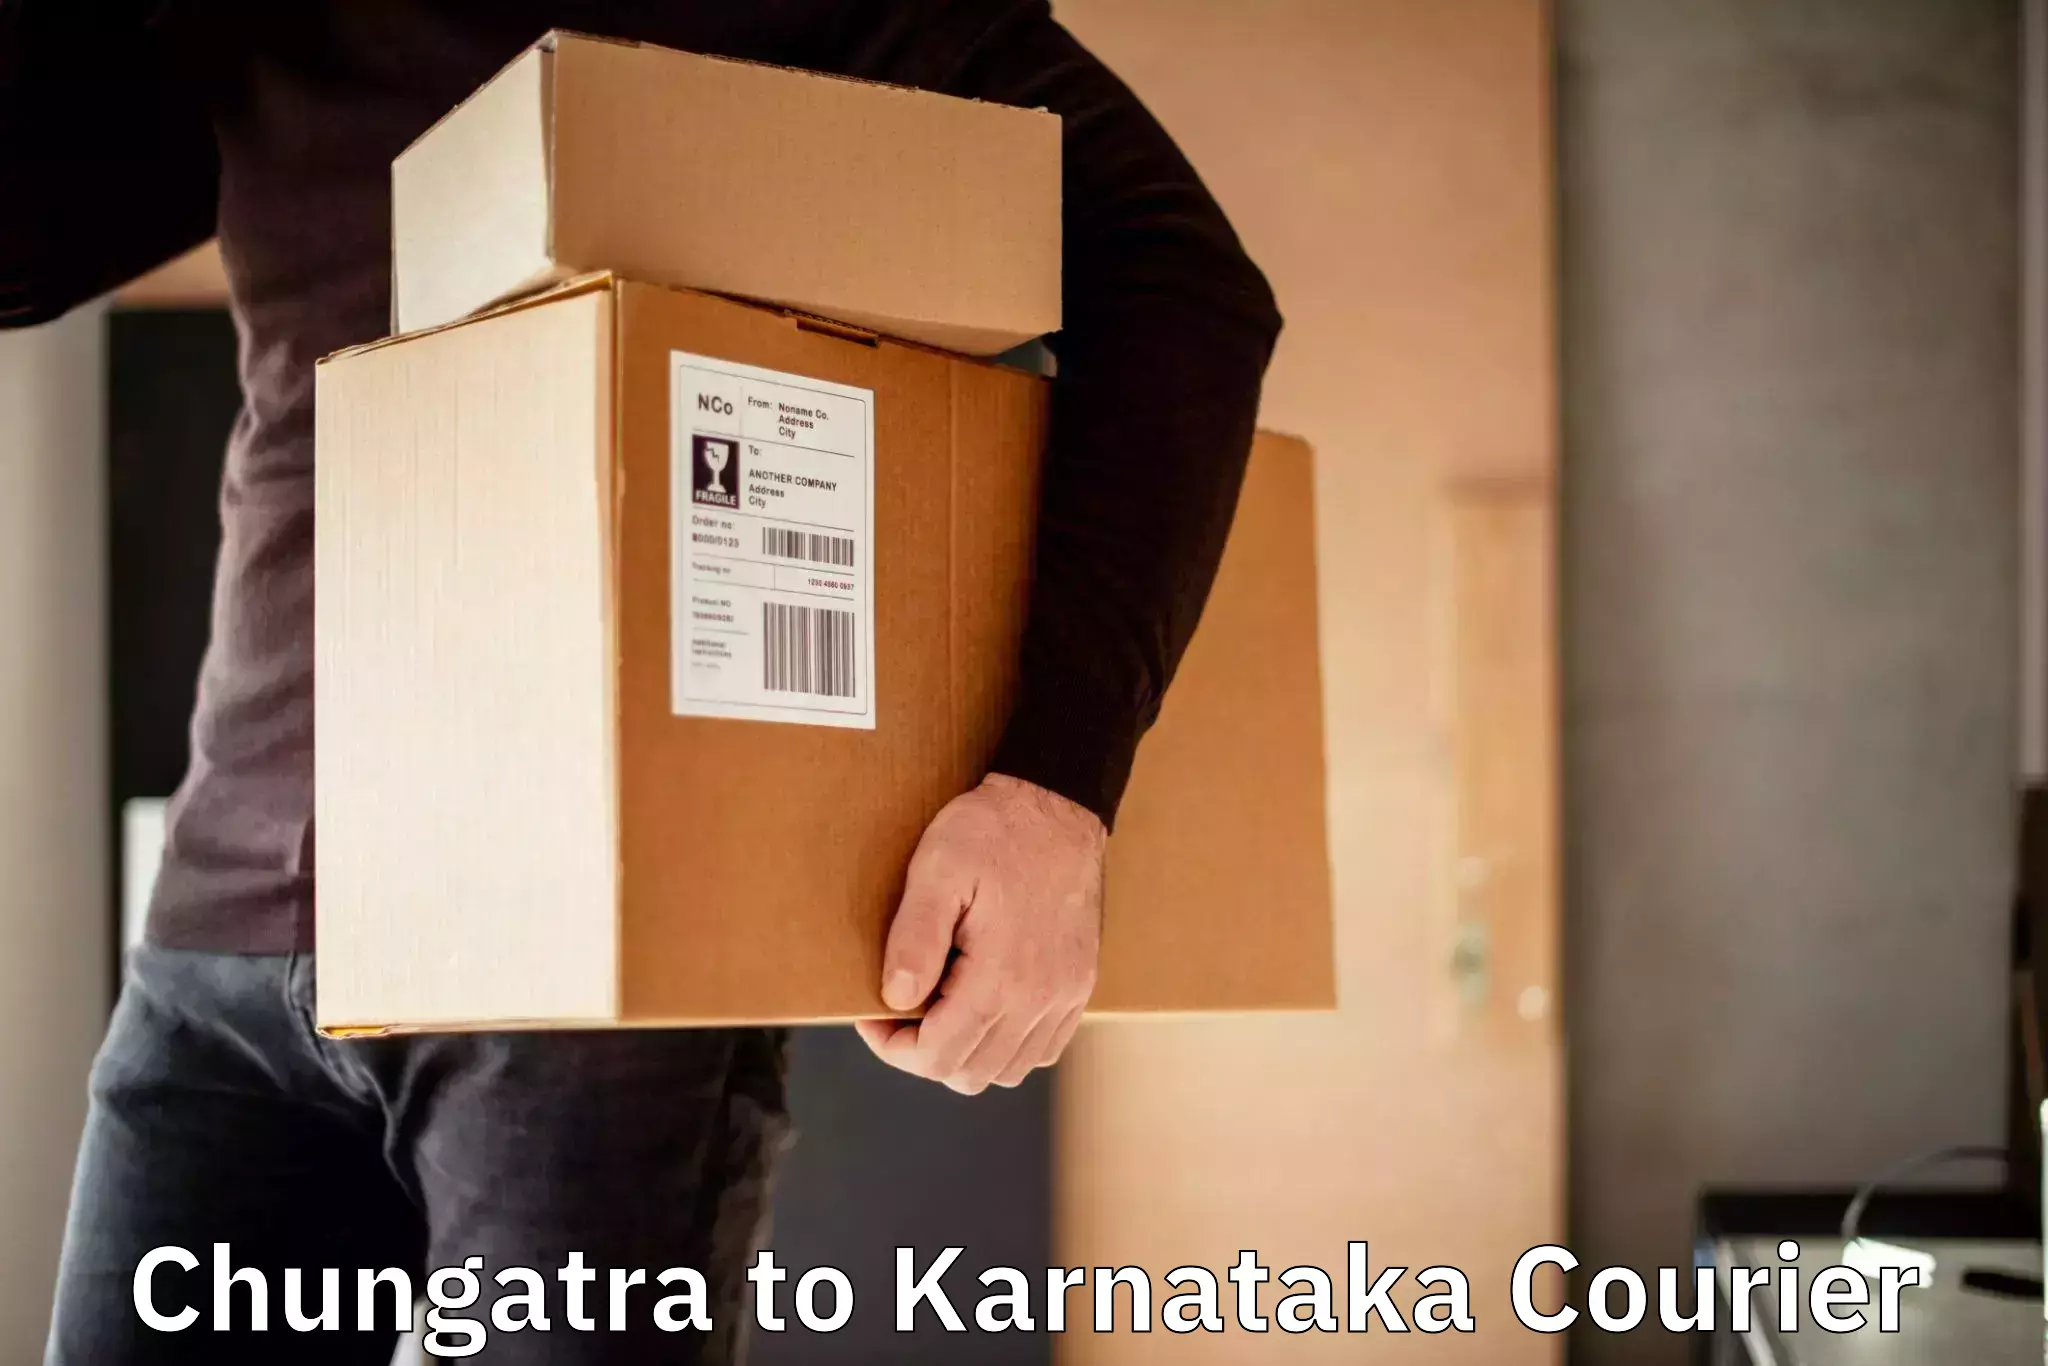 Courier service partnerships Chungatra to Srirangapatna